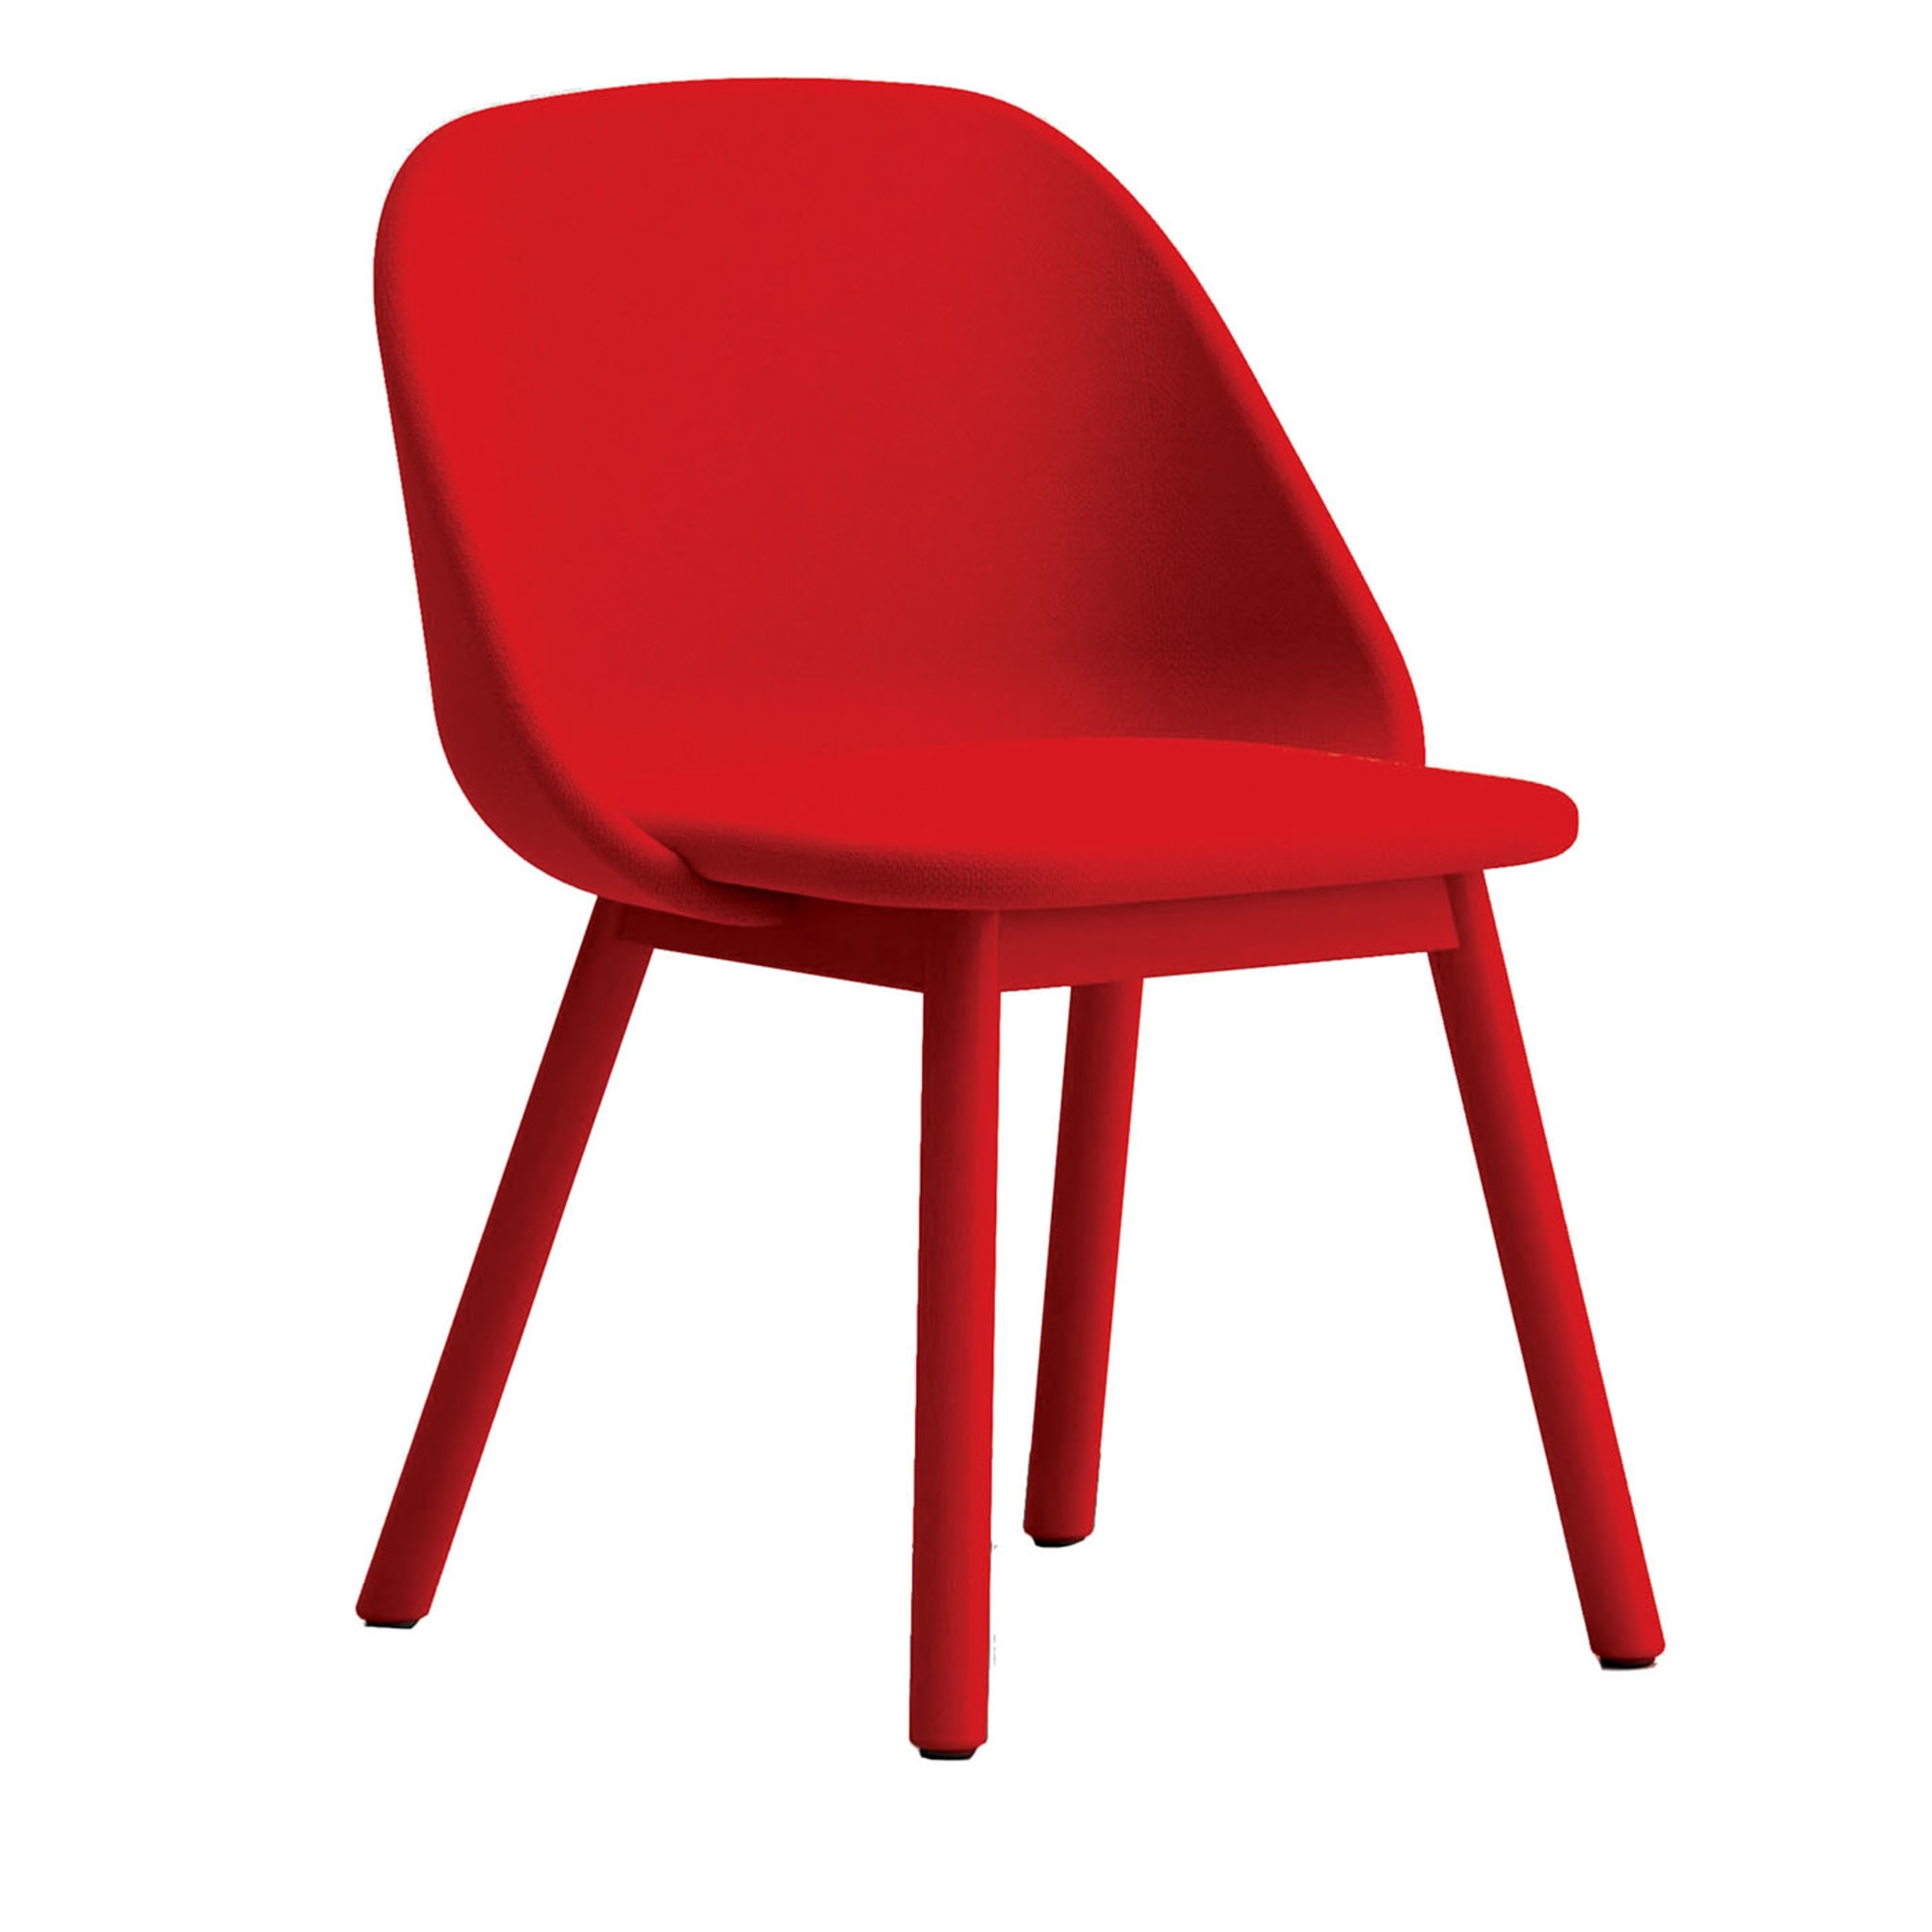 Löffelroter Stuhl von Studio Pastina - Hauptansicht